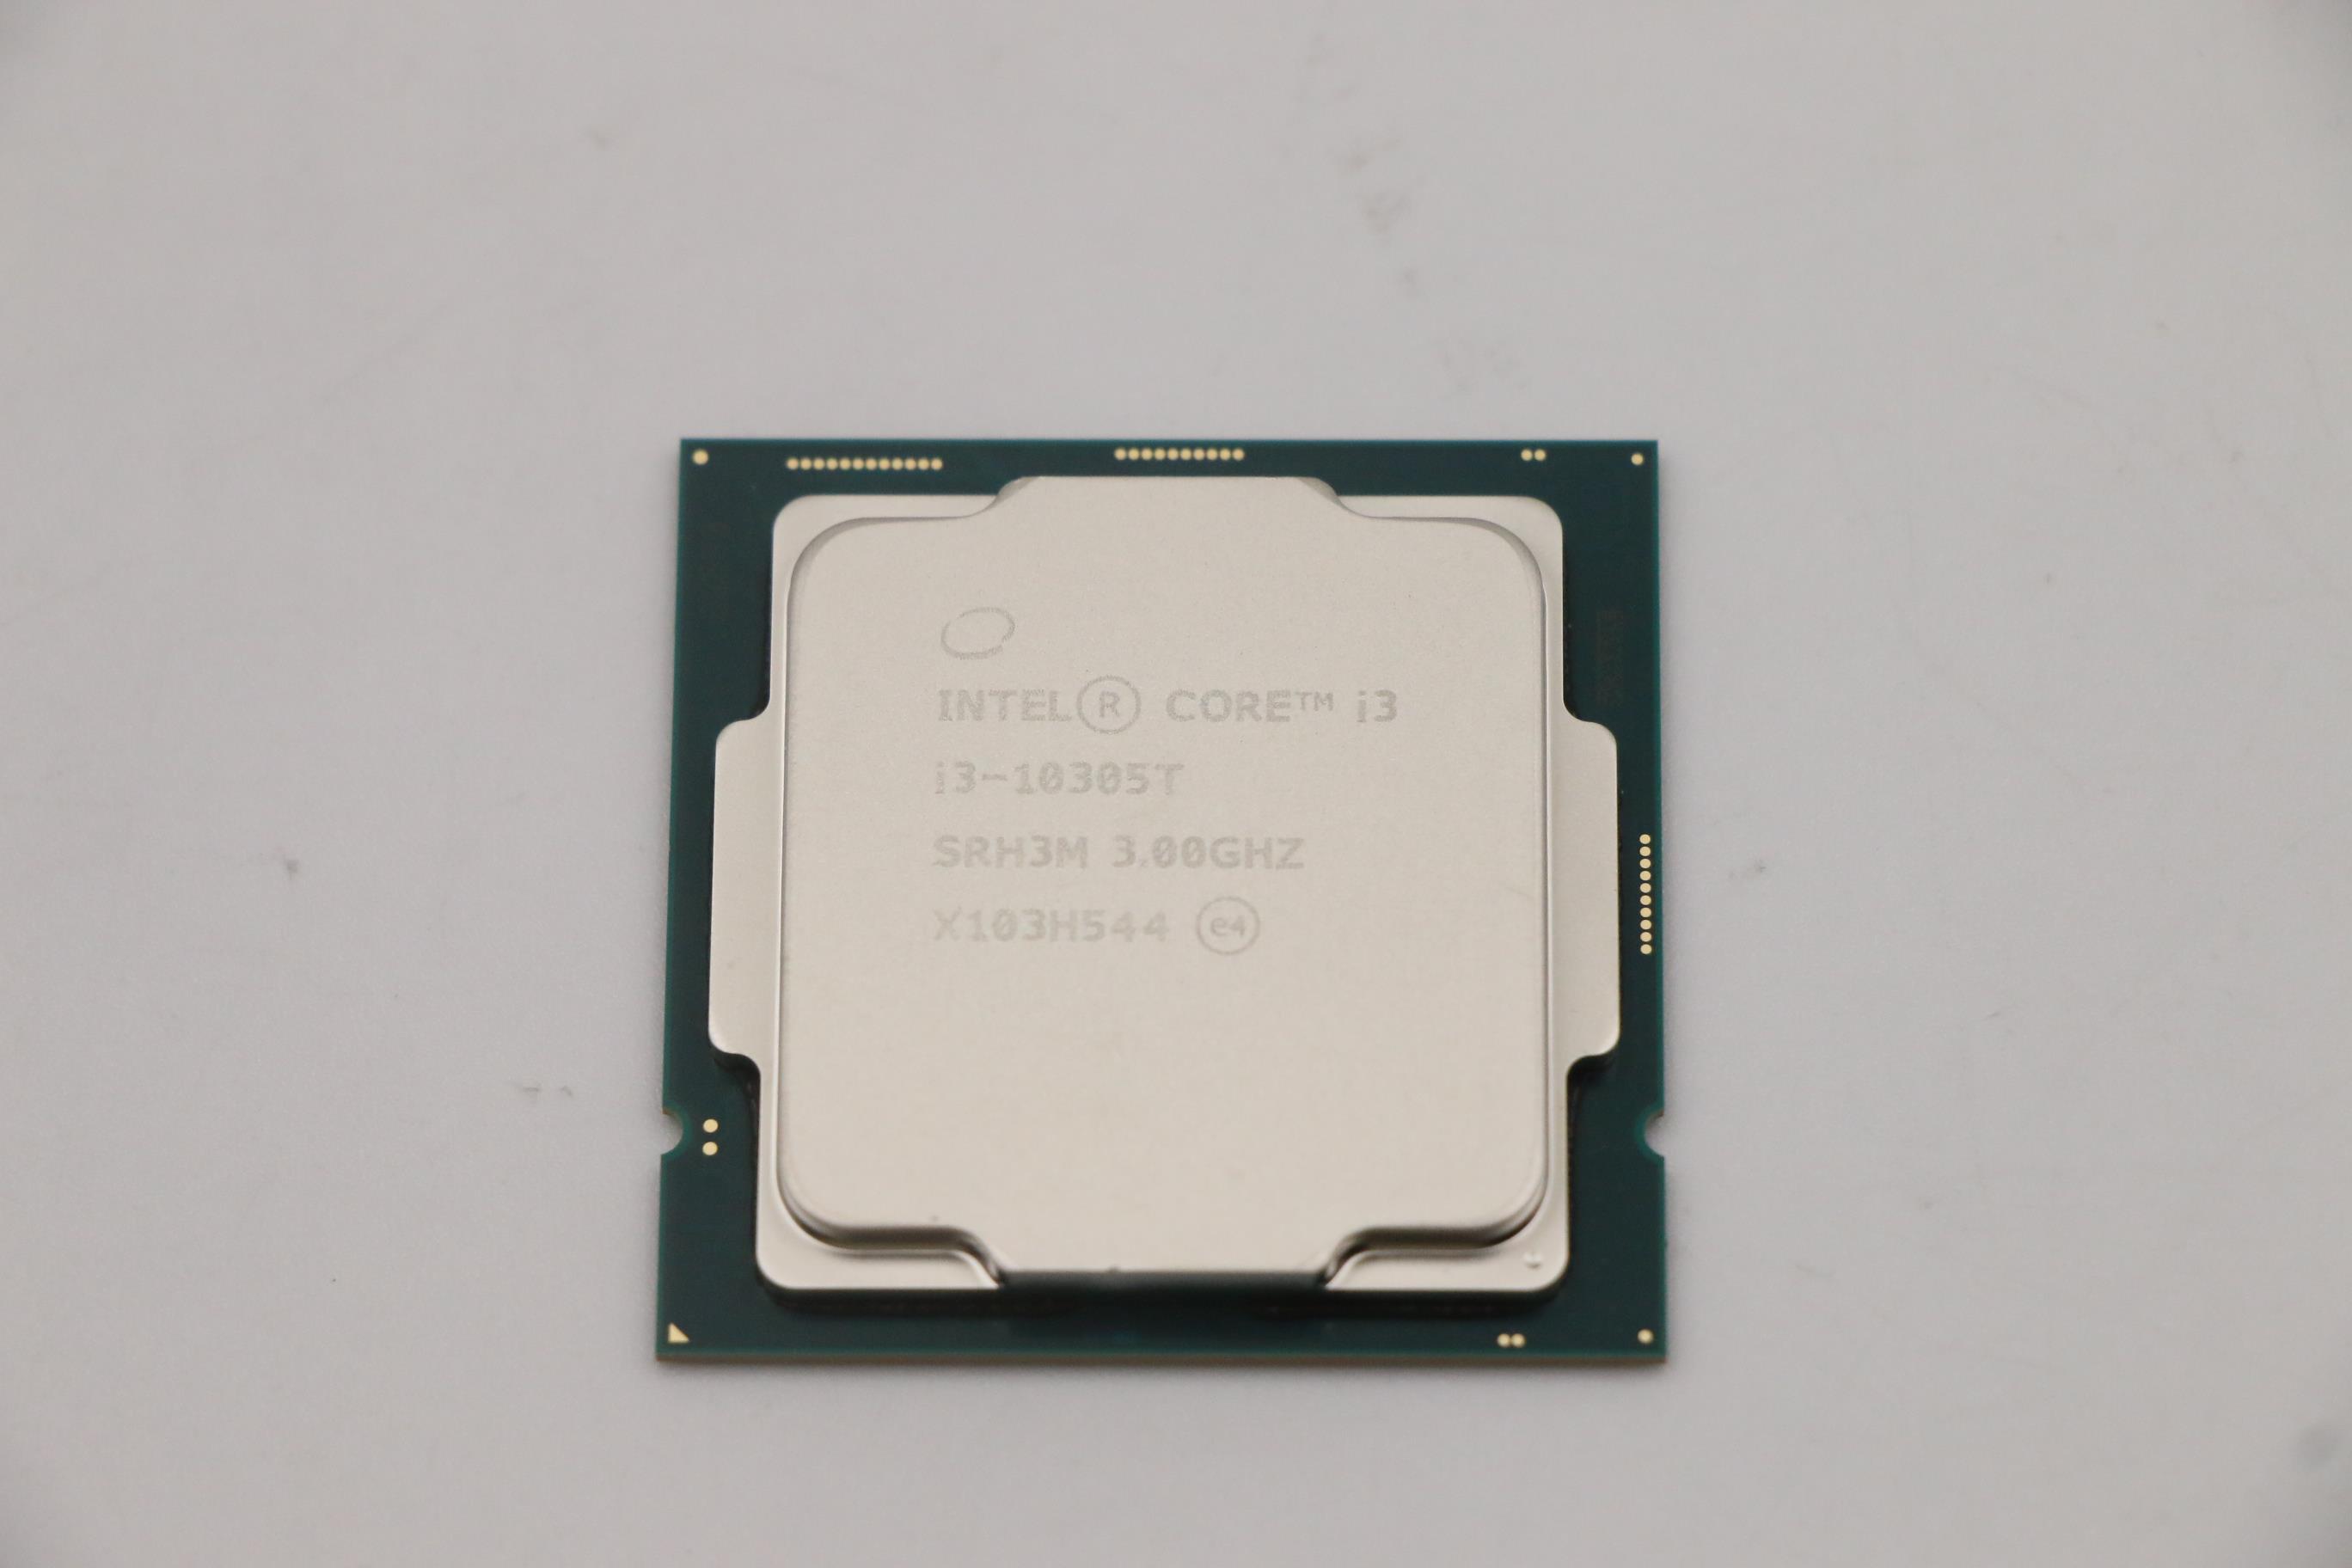 Lenovo Part  Original Lenovo FRU Intel i3-10305T 3.0GHz/4C/8M 35W DDR4 2666